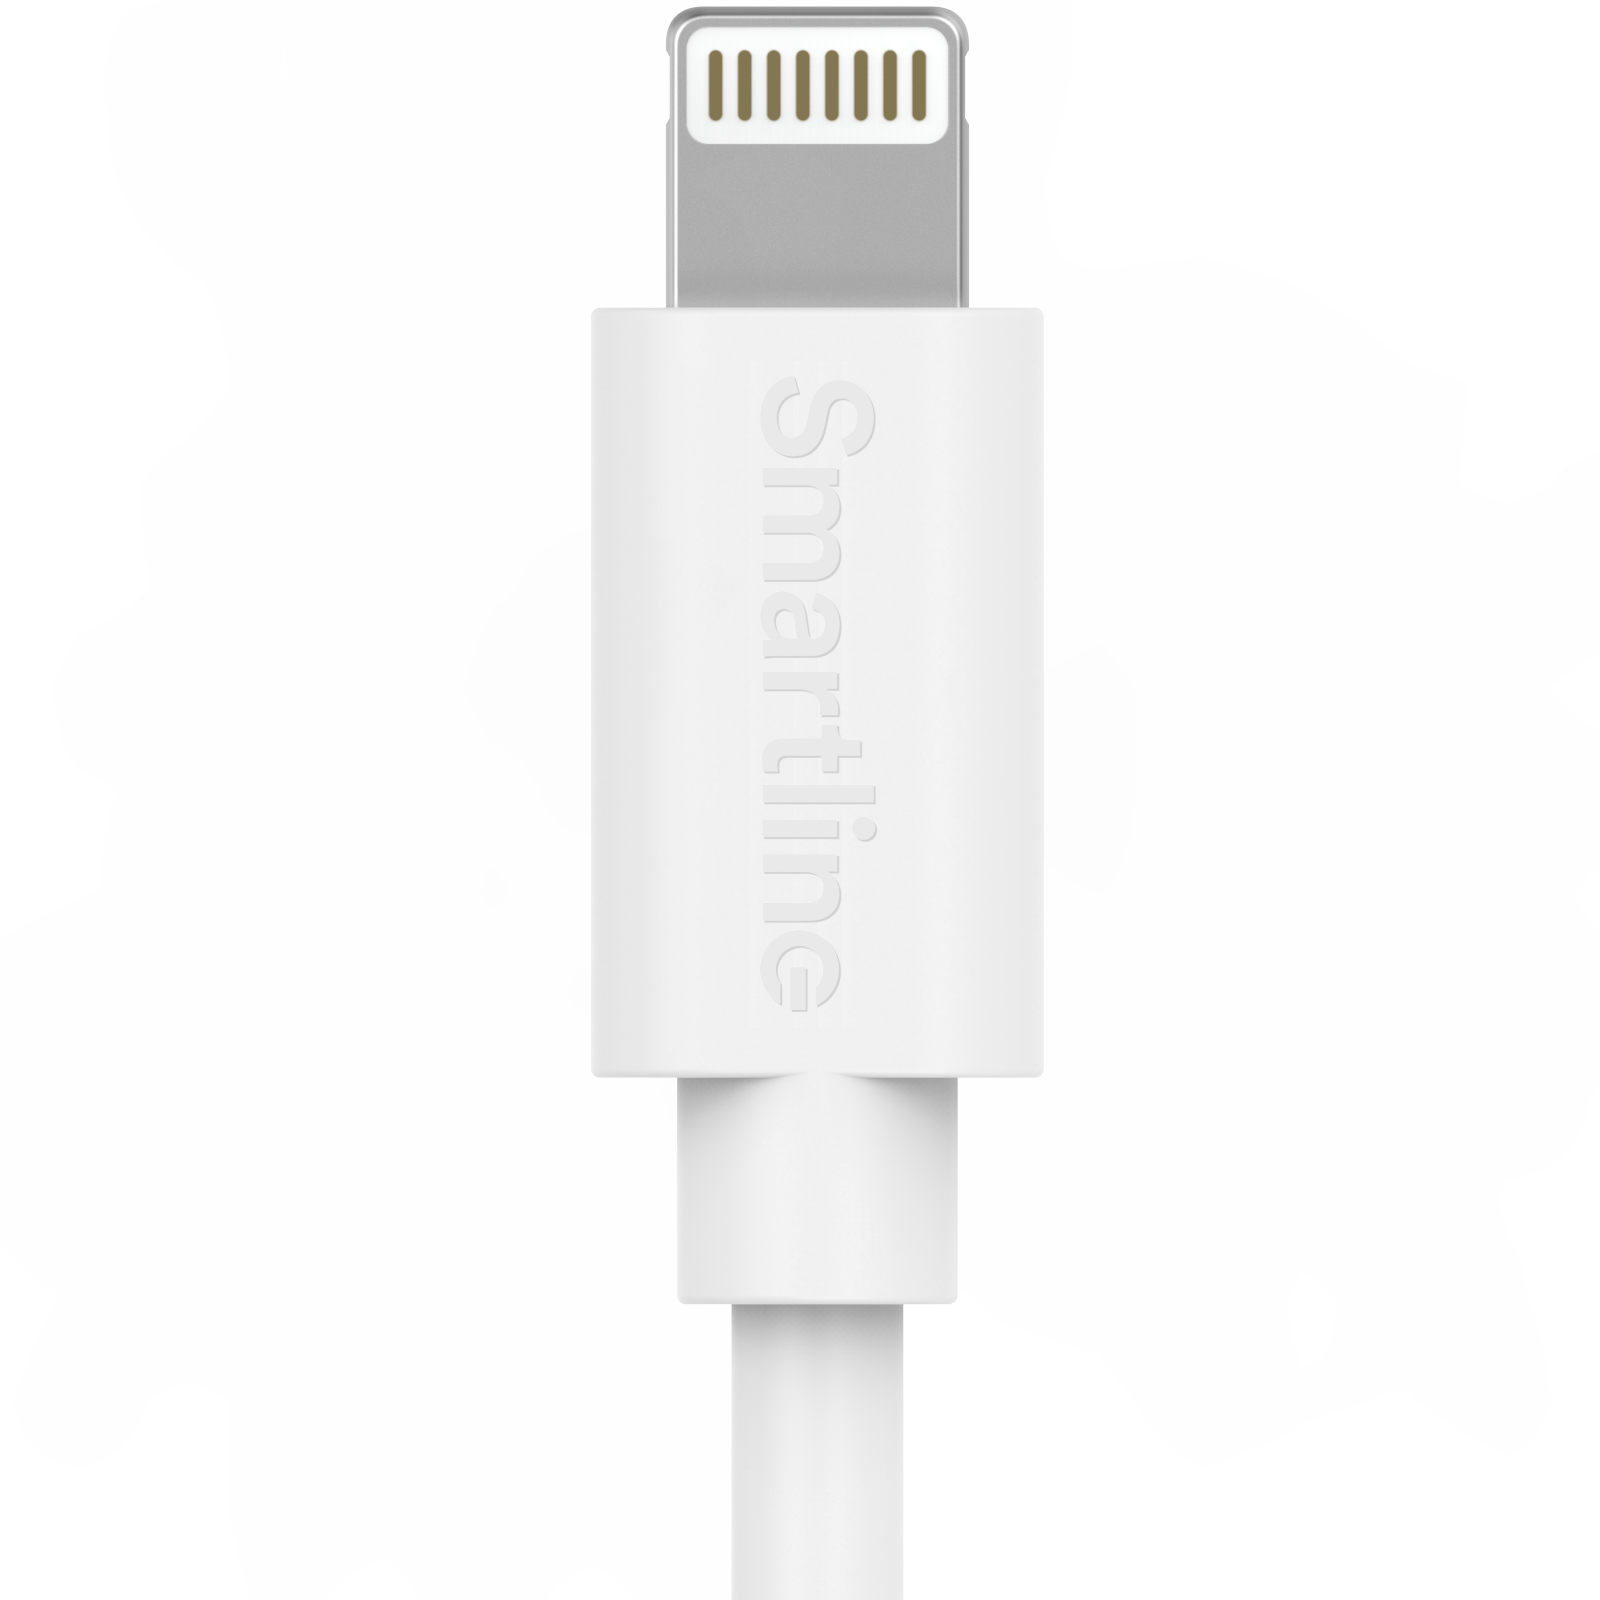 USB Cable Lightning 2m hvit